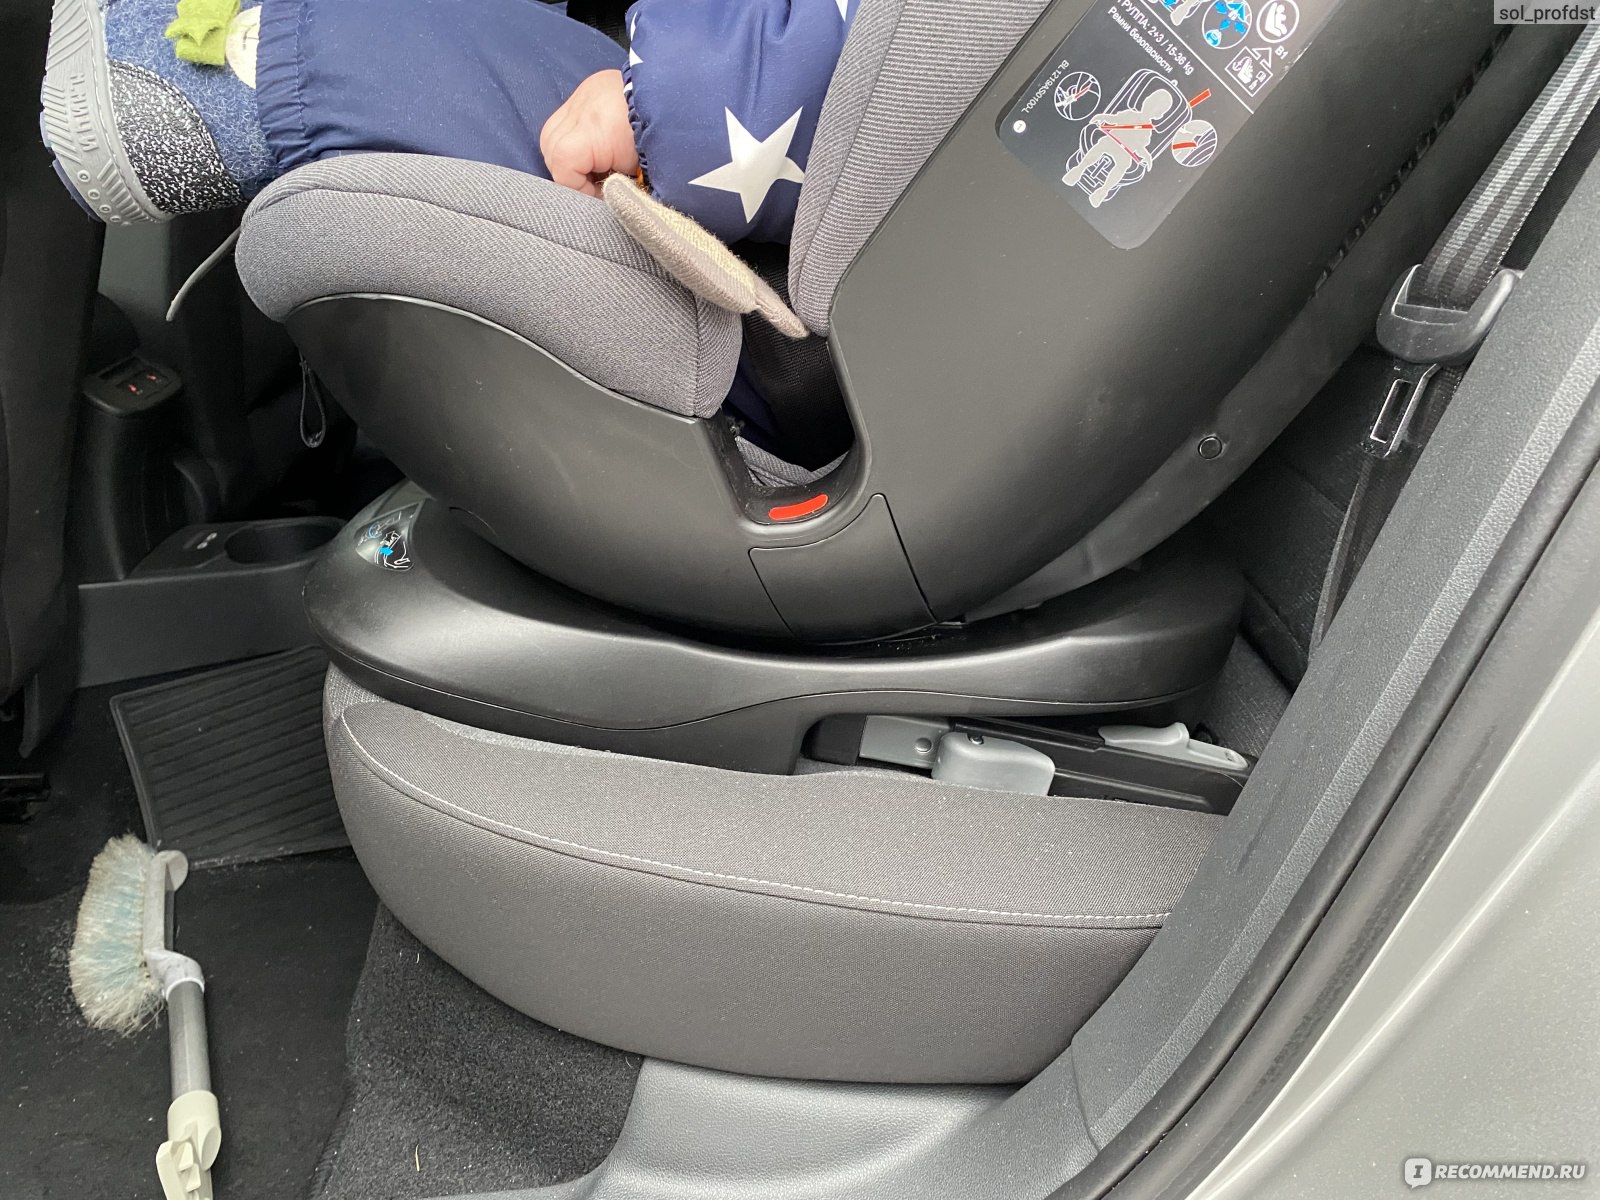 Поменять кресло в автомобиле